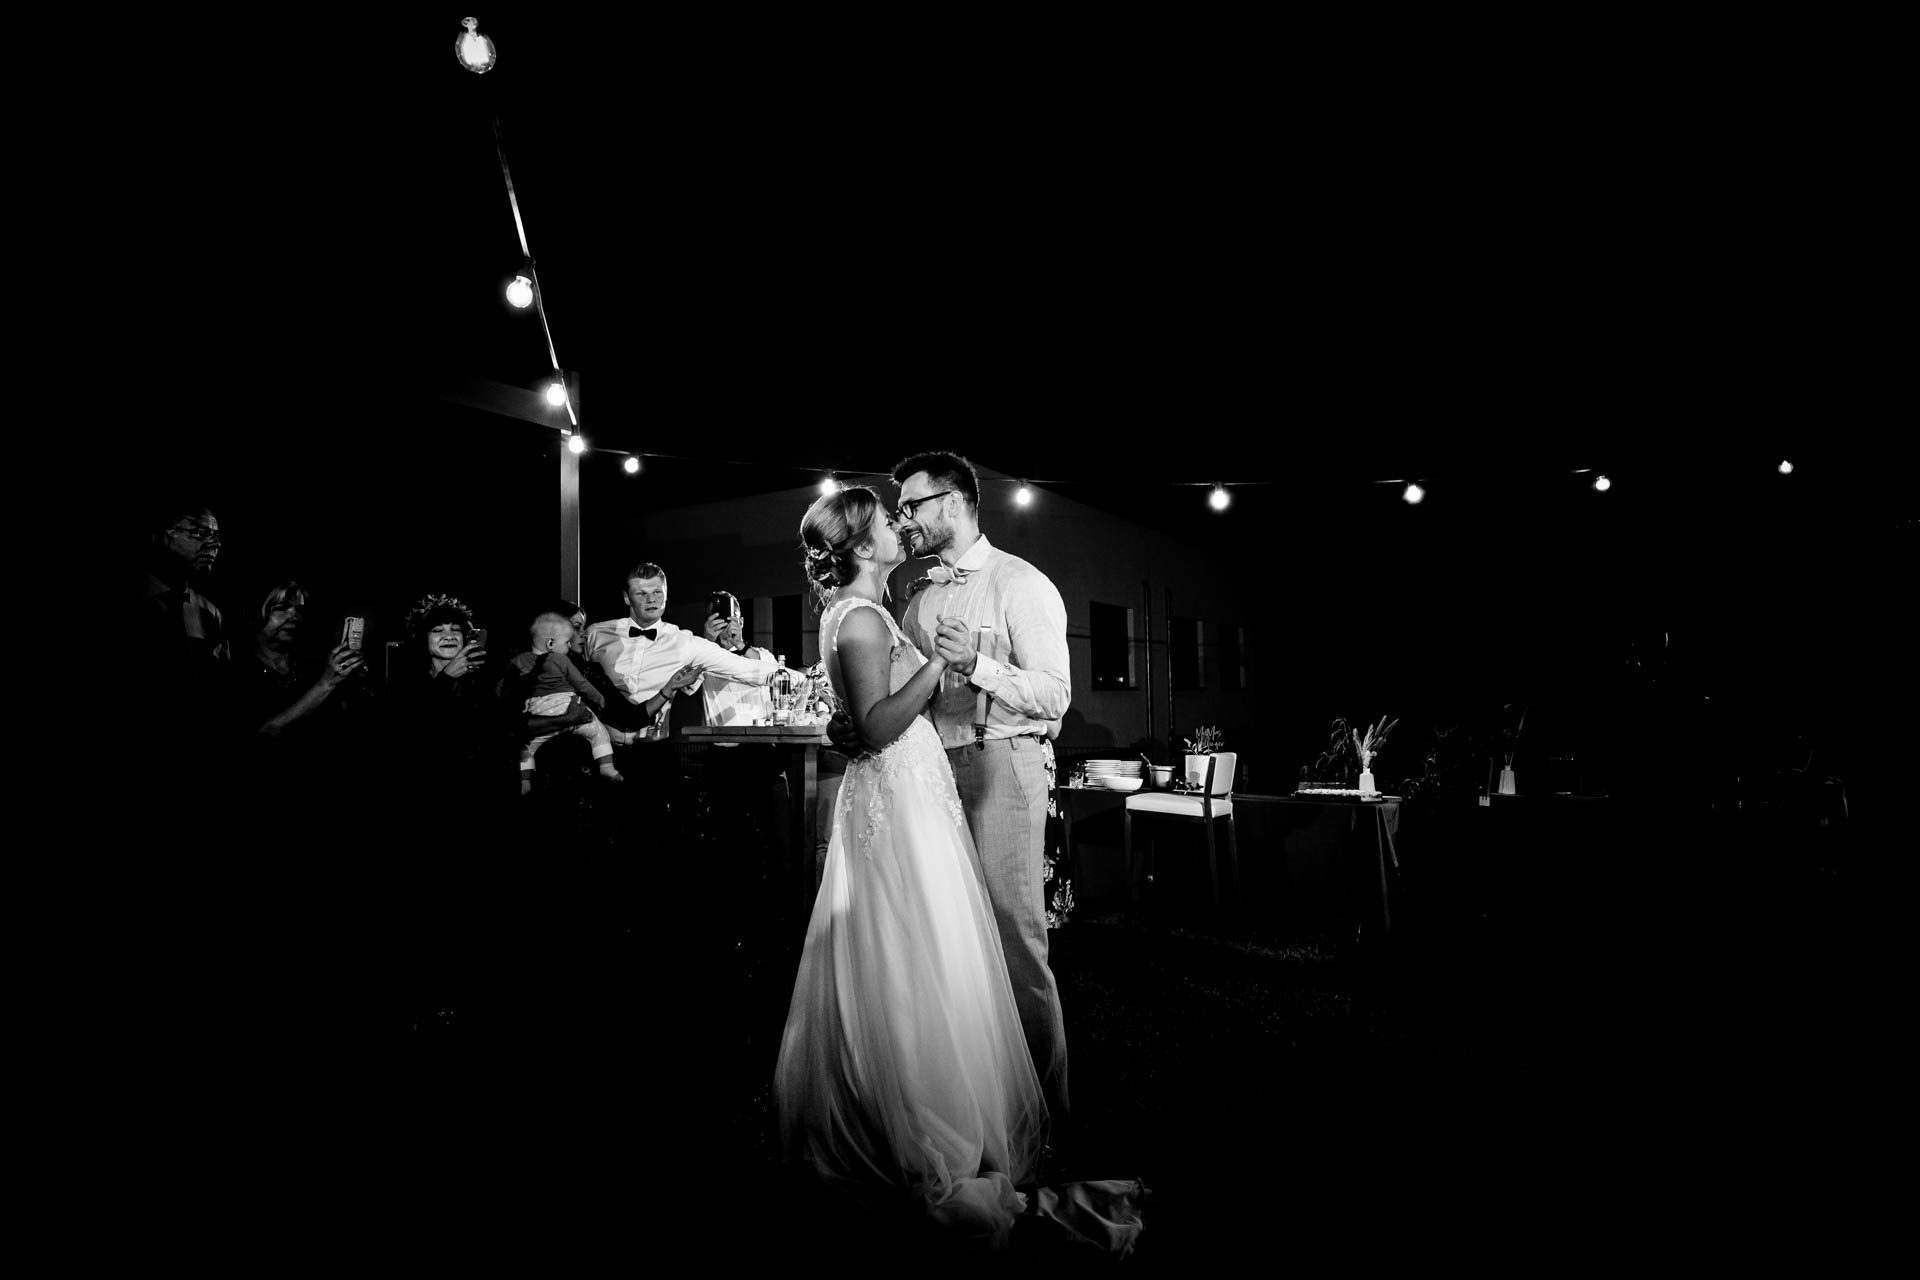 Hochzeitstanz unter funkelndem Sternenhimmel: Romantische Aufnahmen fangen die Eleganz des ersten Tanzes als Ehepaar ein.